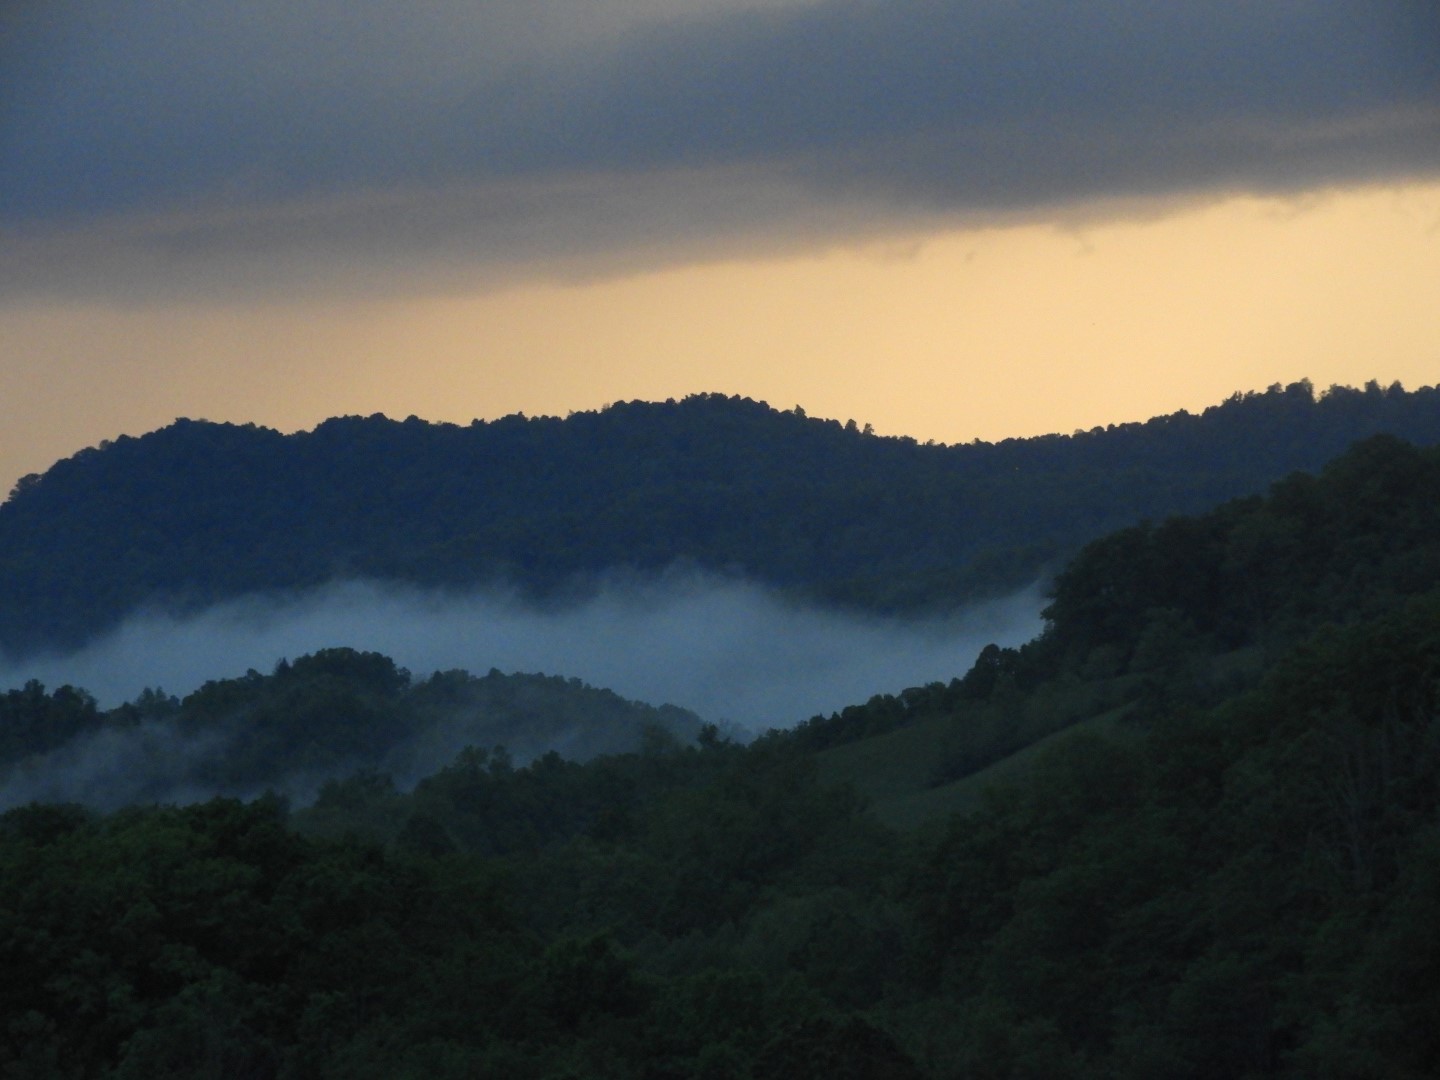 Sunset in Sutton West Virginia